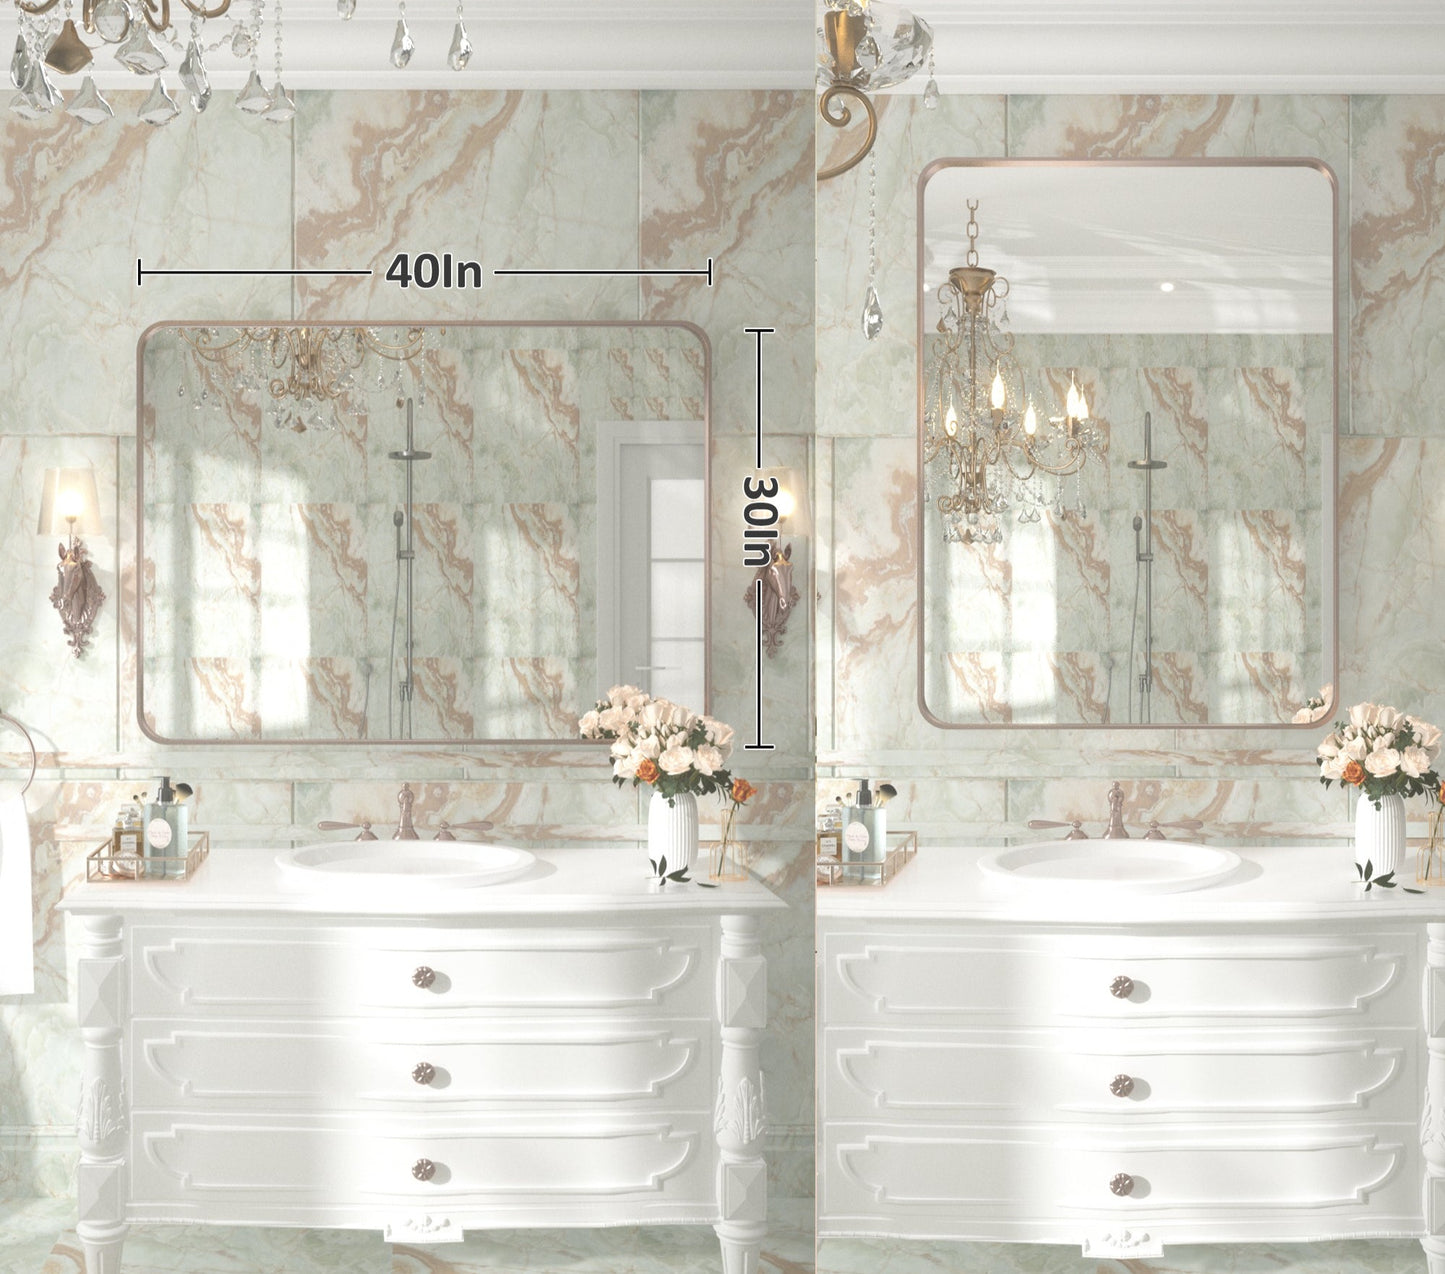 
                  
                    101,6 x 76,2 cm Pilocos moderne contemporain grand miroir à texture nervurée pour salle de bain/mur/chambre/entrée
                  
                